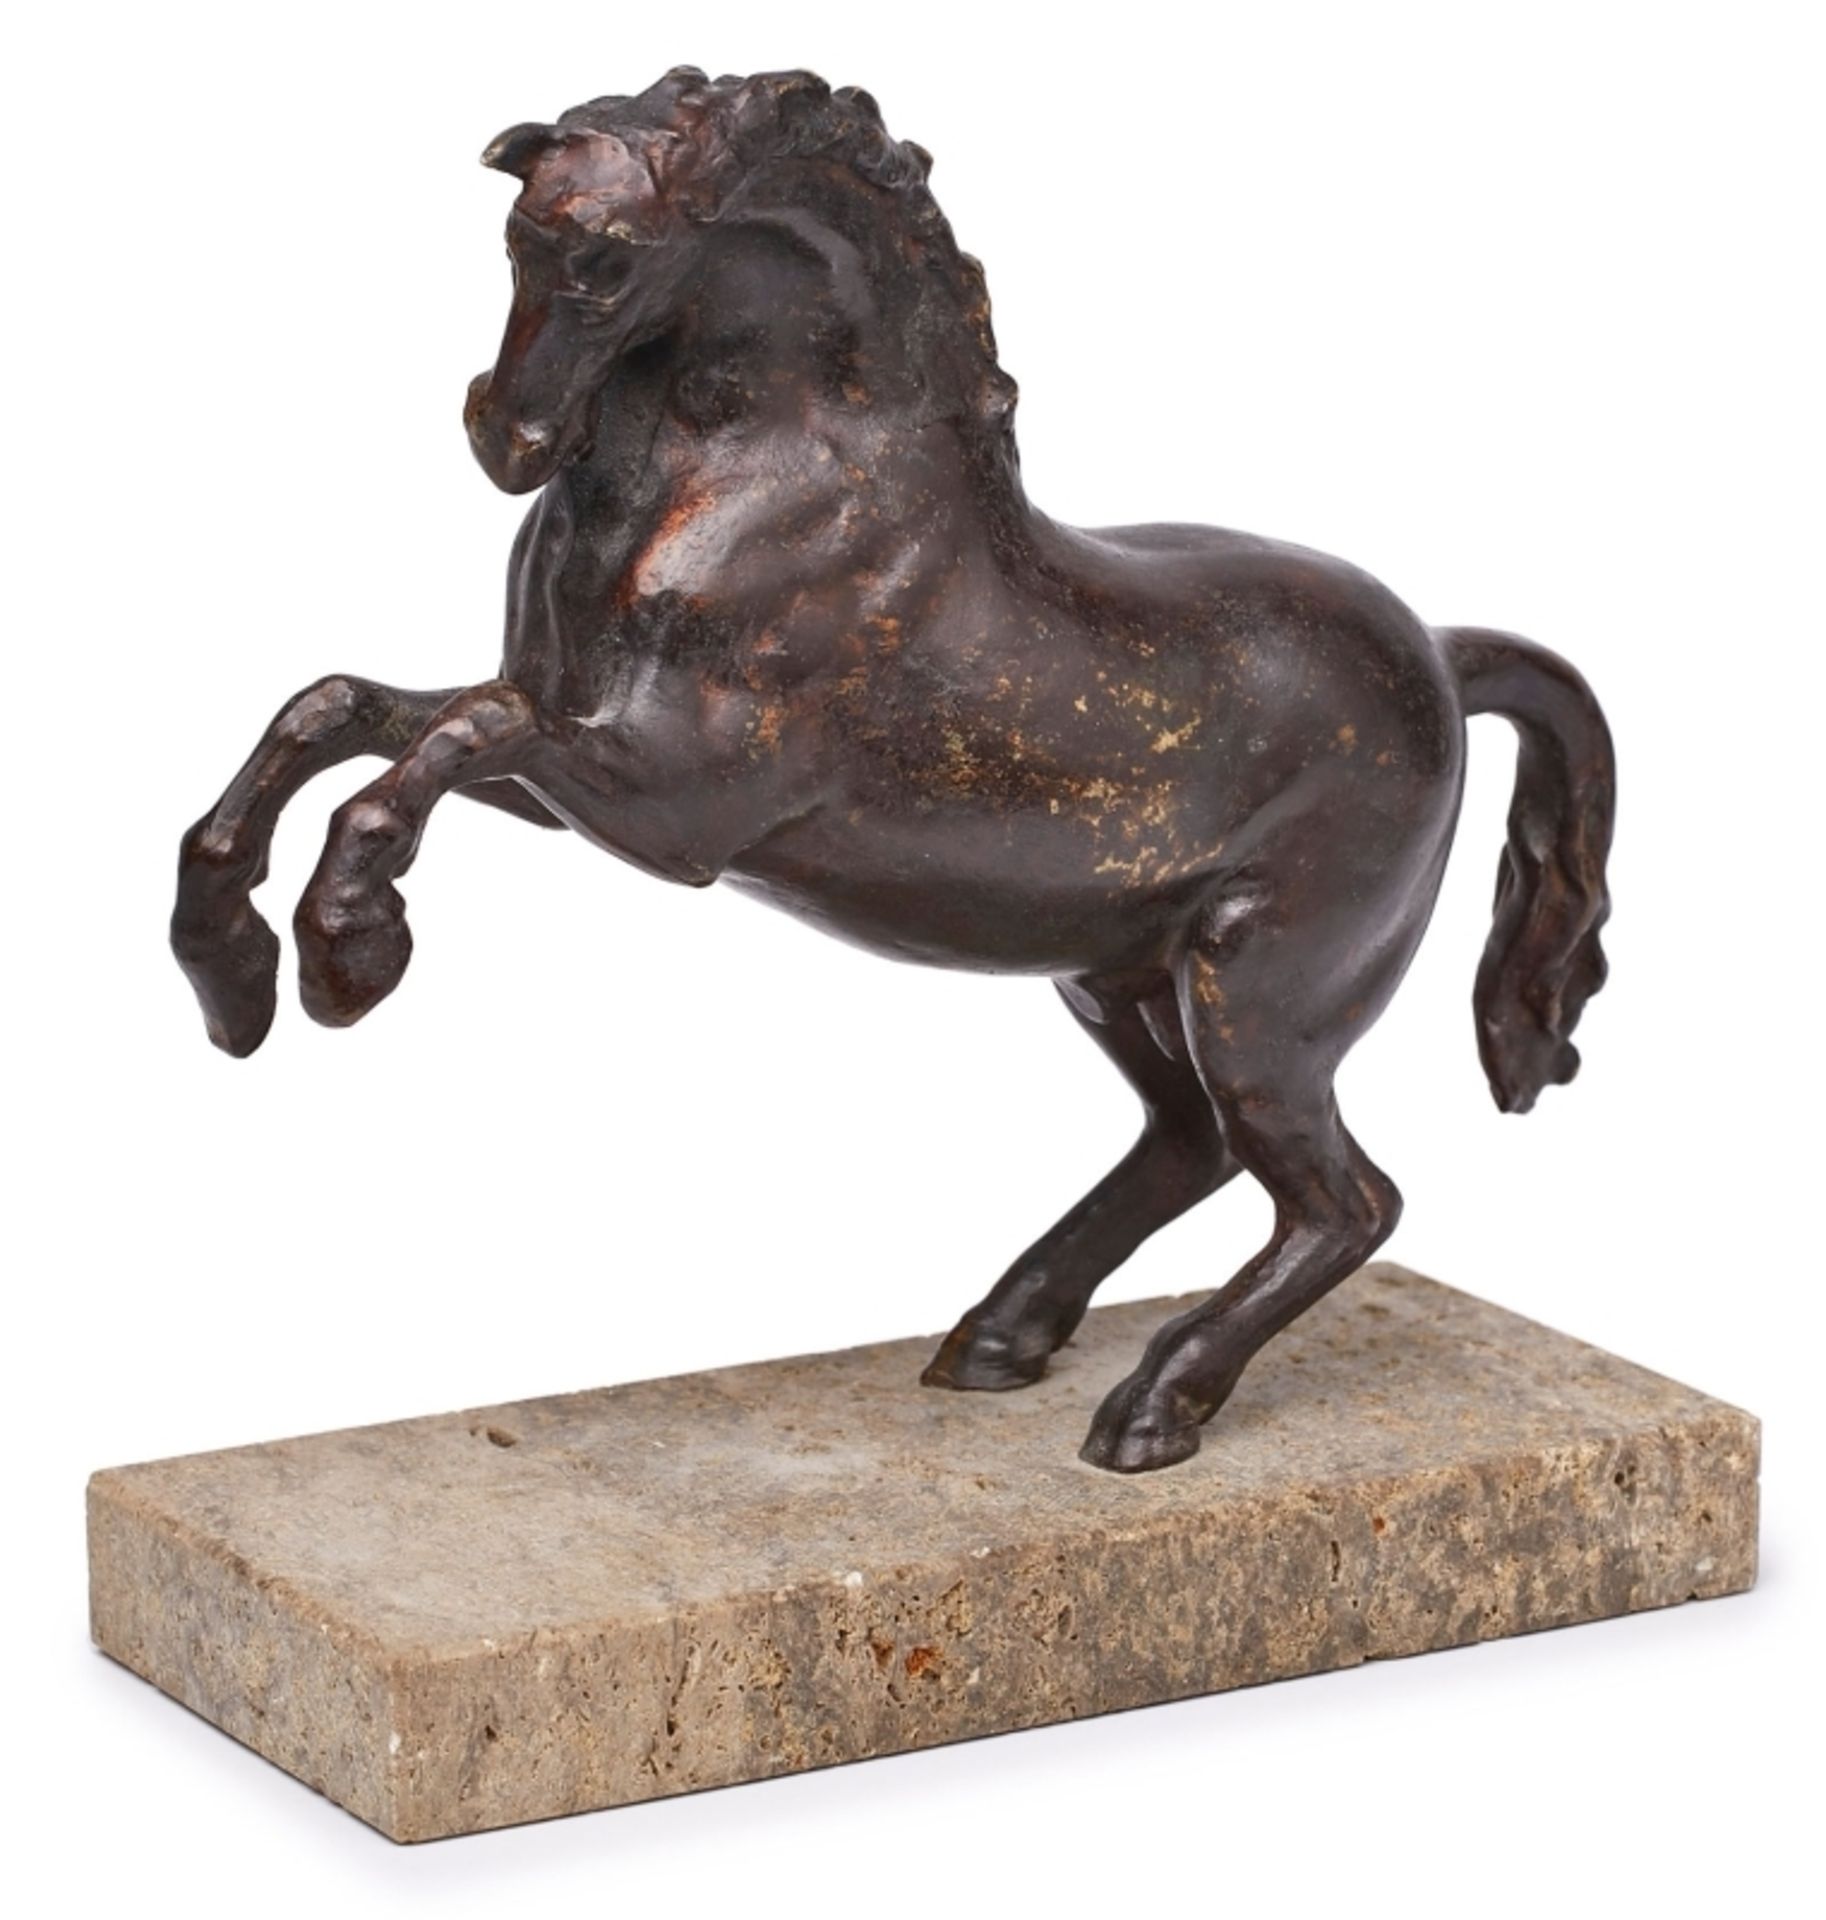 Kl. Bronze Werkstatt Fanelli zugeschr.: Steigendes Pferd, Italien wohl 16./ 17. Jh.